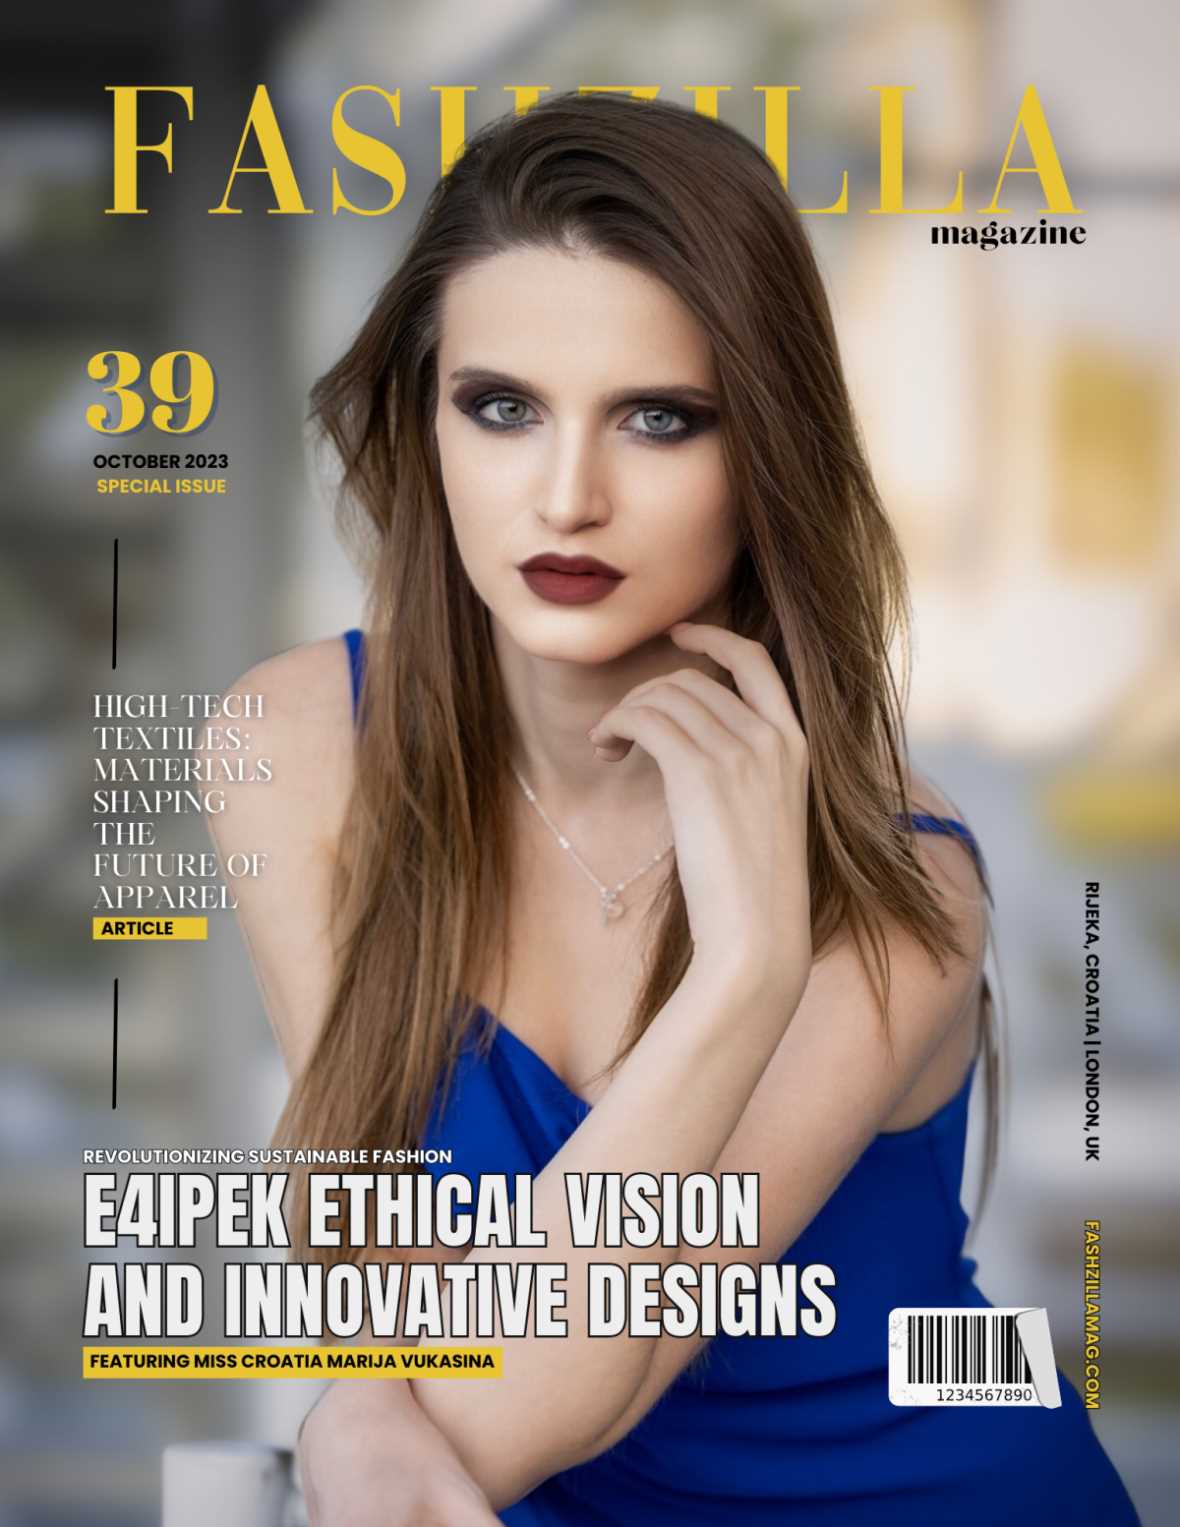 Miss turizma Hrvatske Marija Vukašina: "U budućnosti bih voljela otvoriti vlastitu modnu agenciju!"